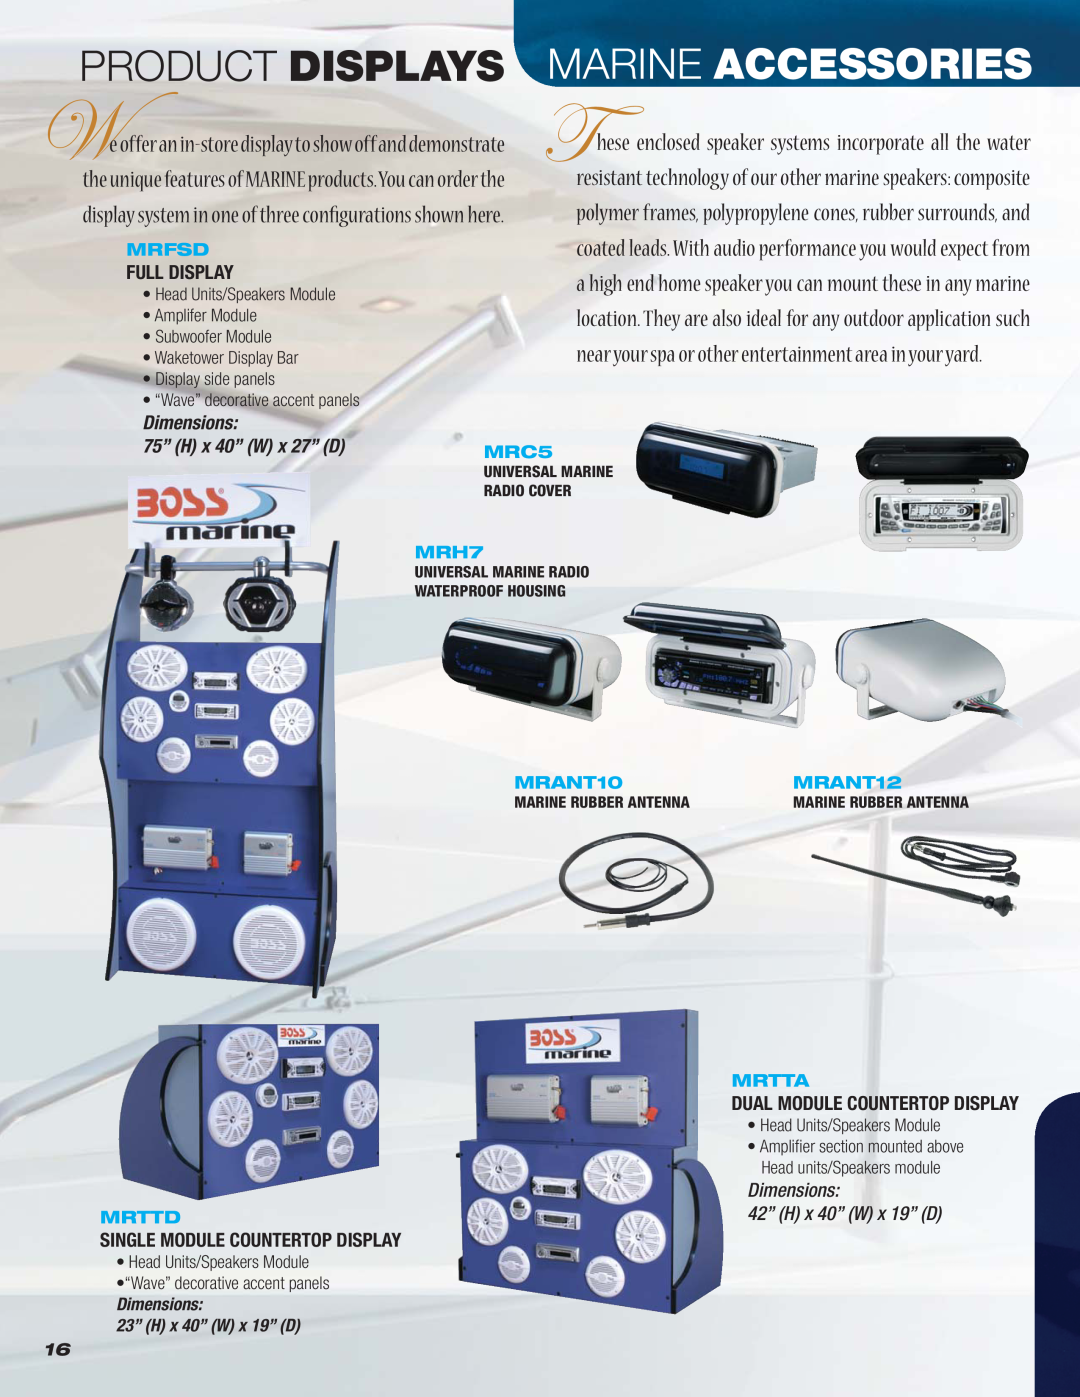 Boss Audio Systems MR1620W Product Displays, Marine Accessories, Full Display, Dimensions 75” H x 40” W x 27” D, Mrfsd 